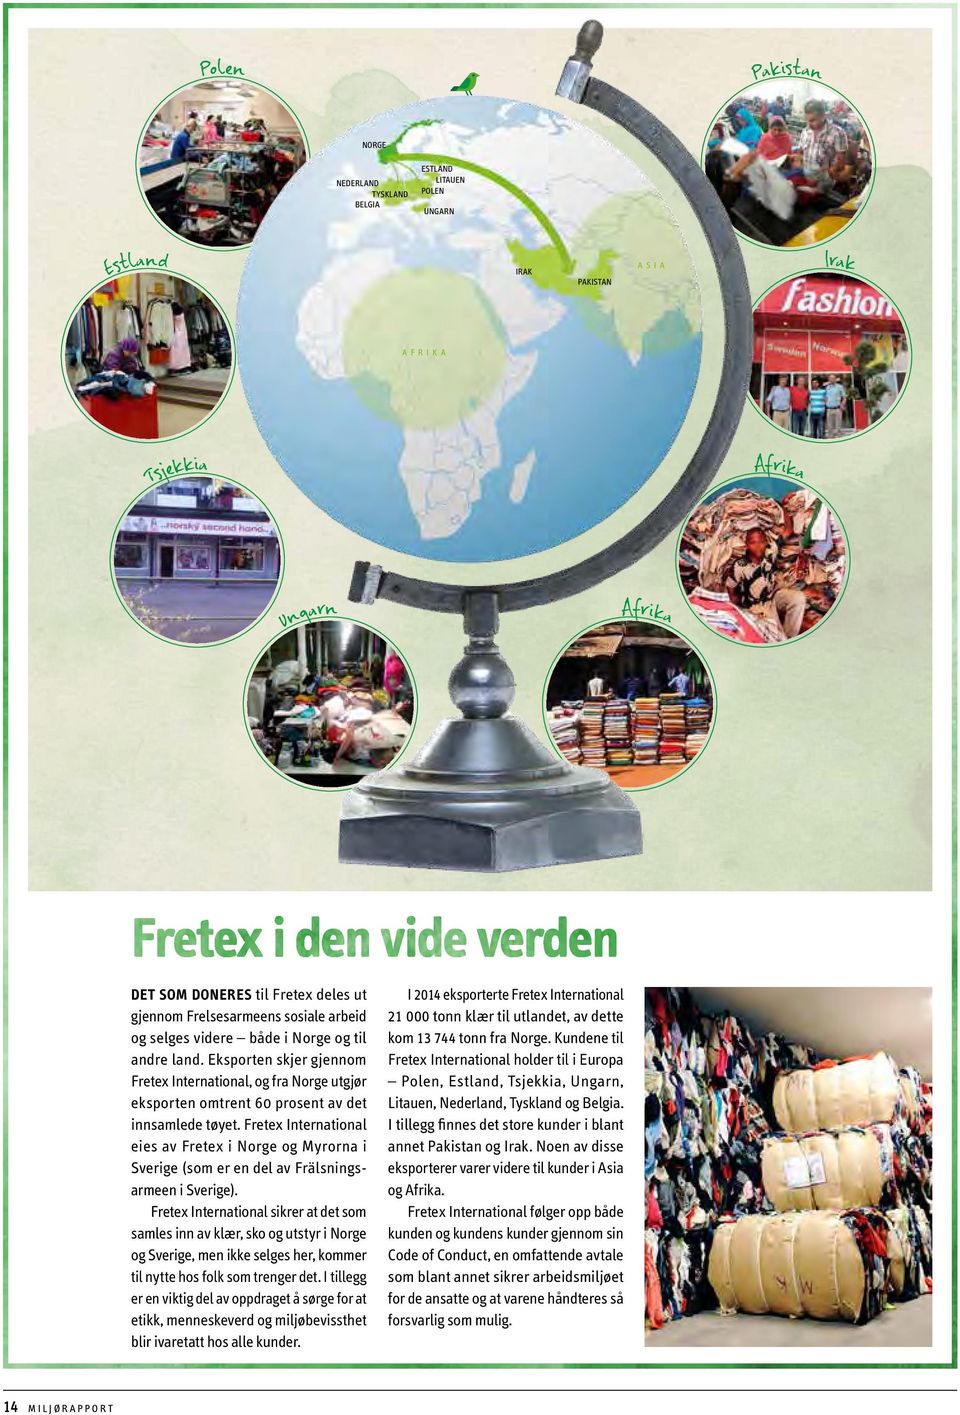 Fretex Inter national eies av Fretex i Norge og Myrorna i Sverige (som er en del av Frälsningsarmeen i Sverige).